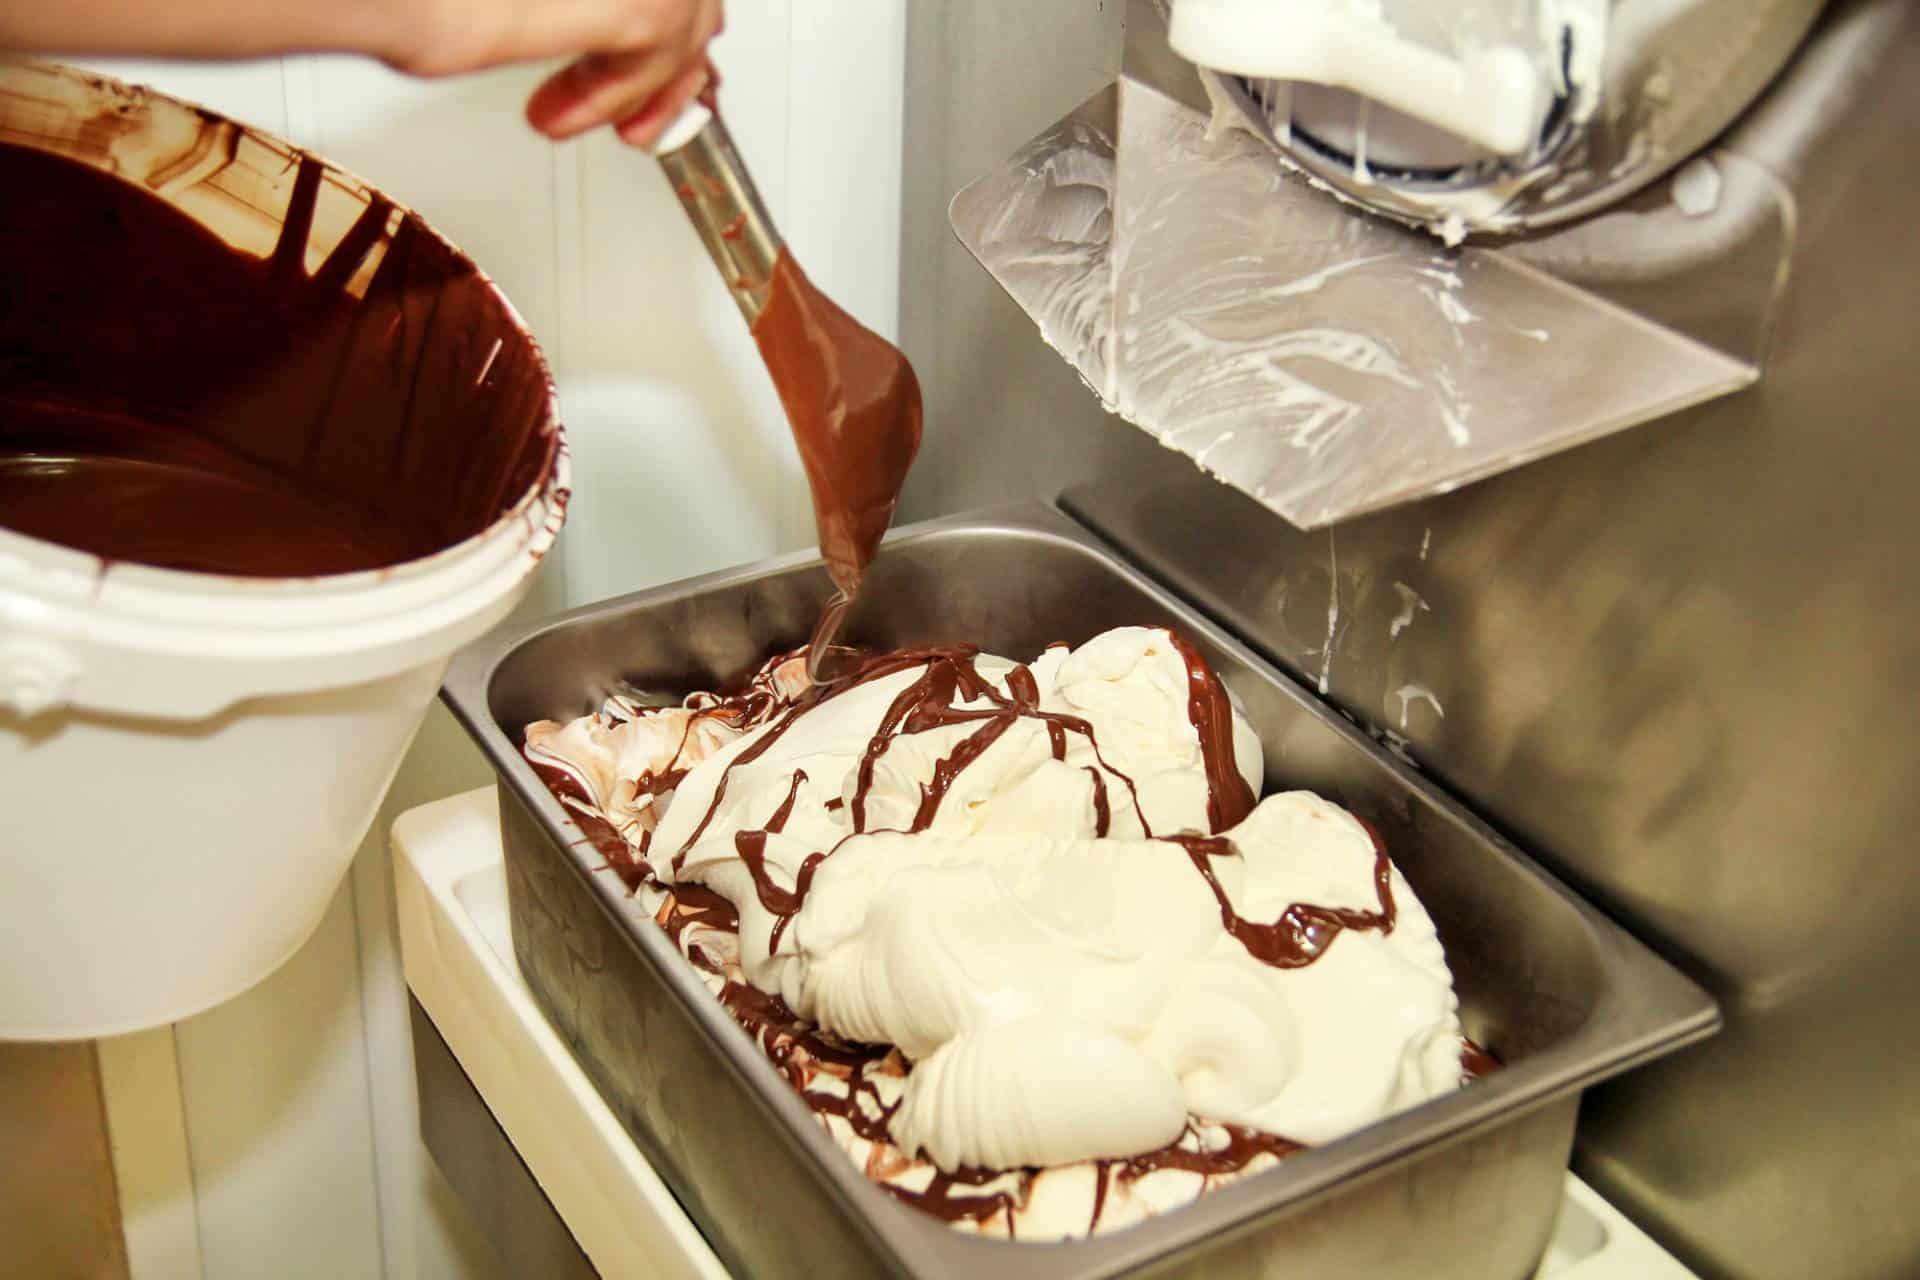 Woman working at ice cream factory adding chocolate swirls to creamy vanilla ice cream.